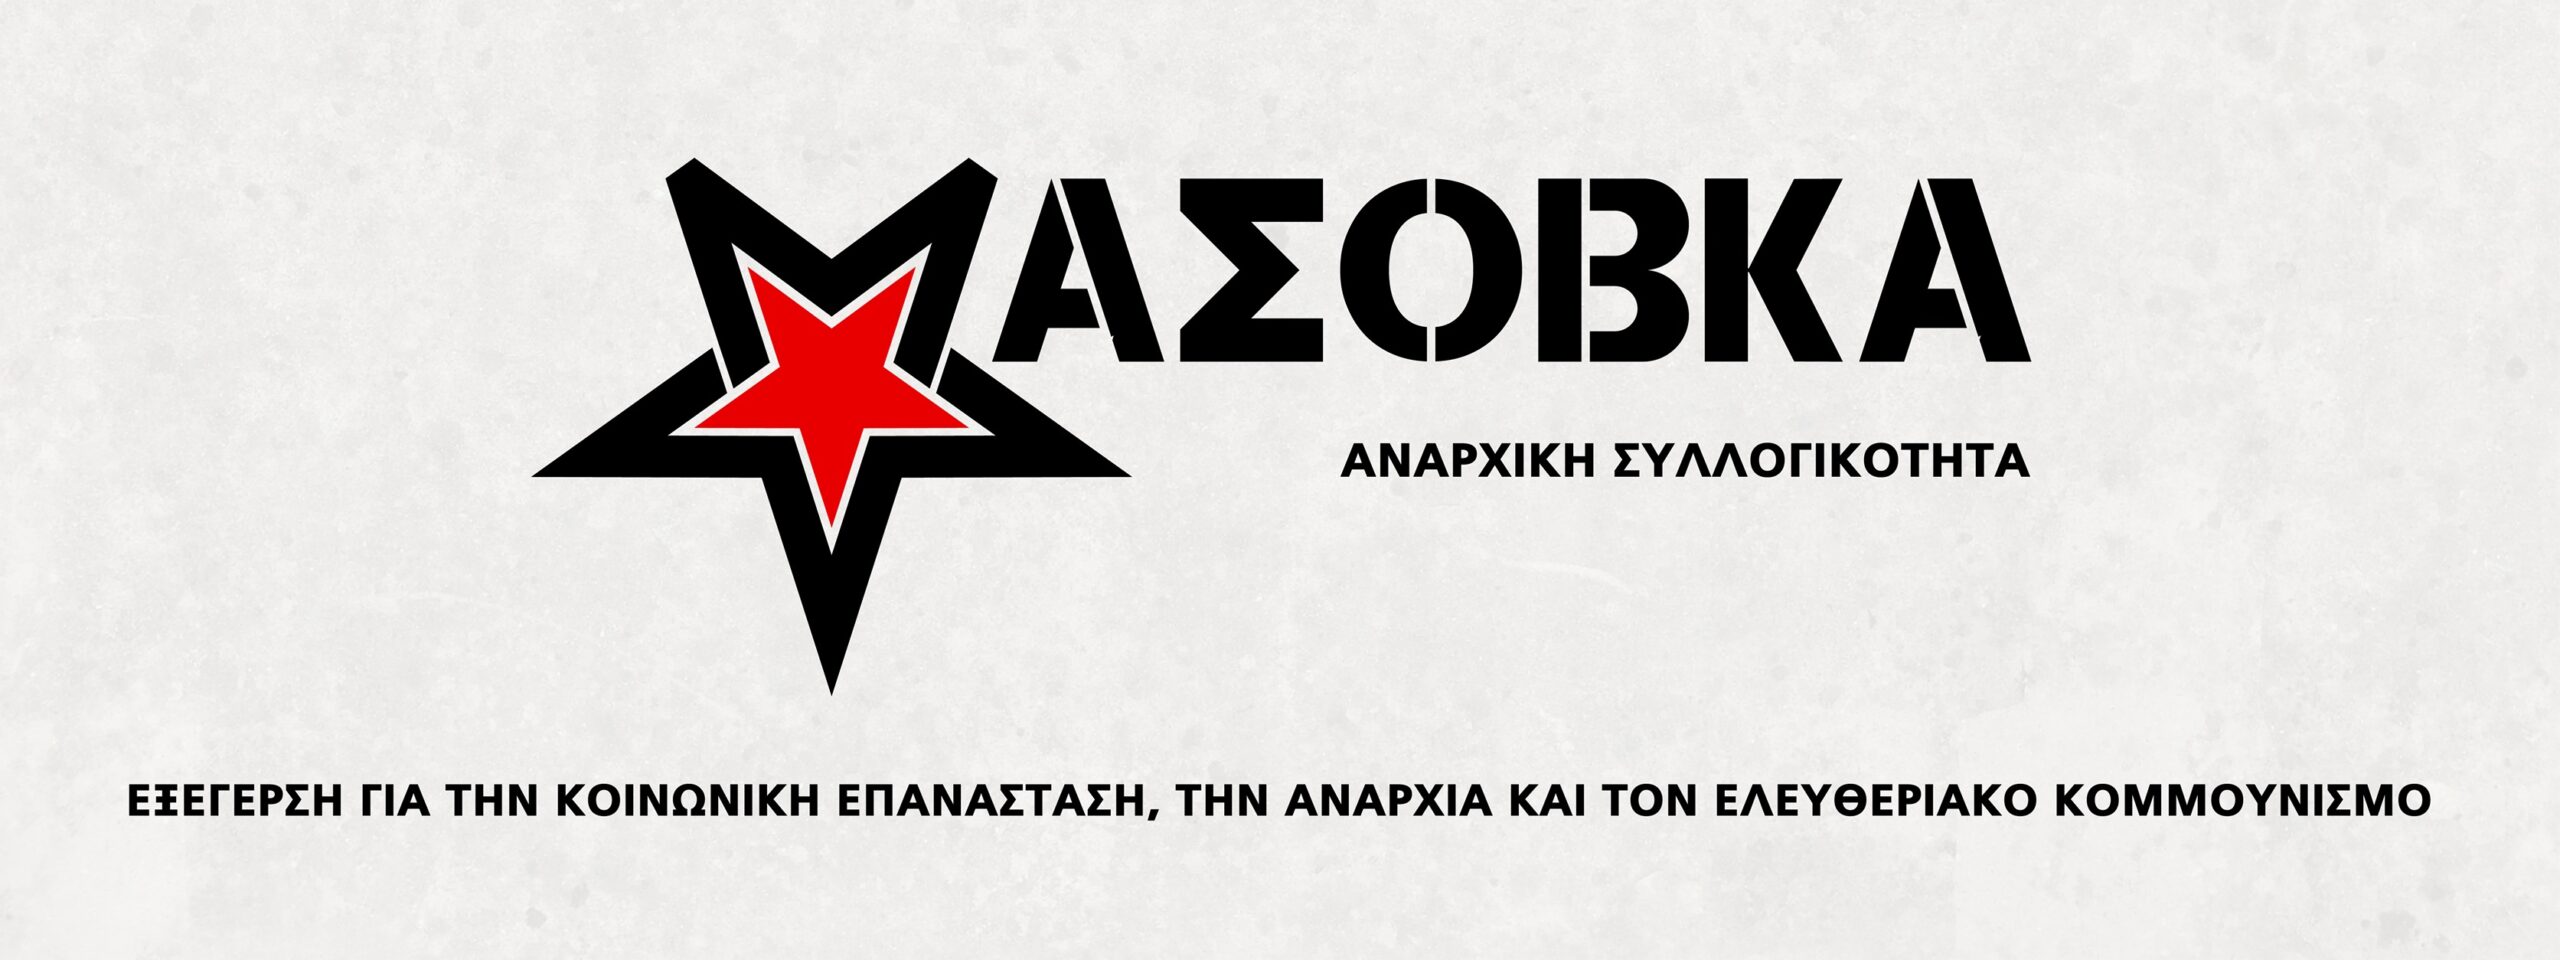 Δήλωση των δύο συλληφθέντων μελών της αναρχικής συλλογικότητας Μασόβκα για  τις διώξεις τους | Alerta.gr